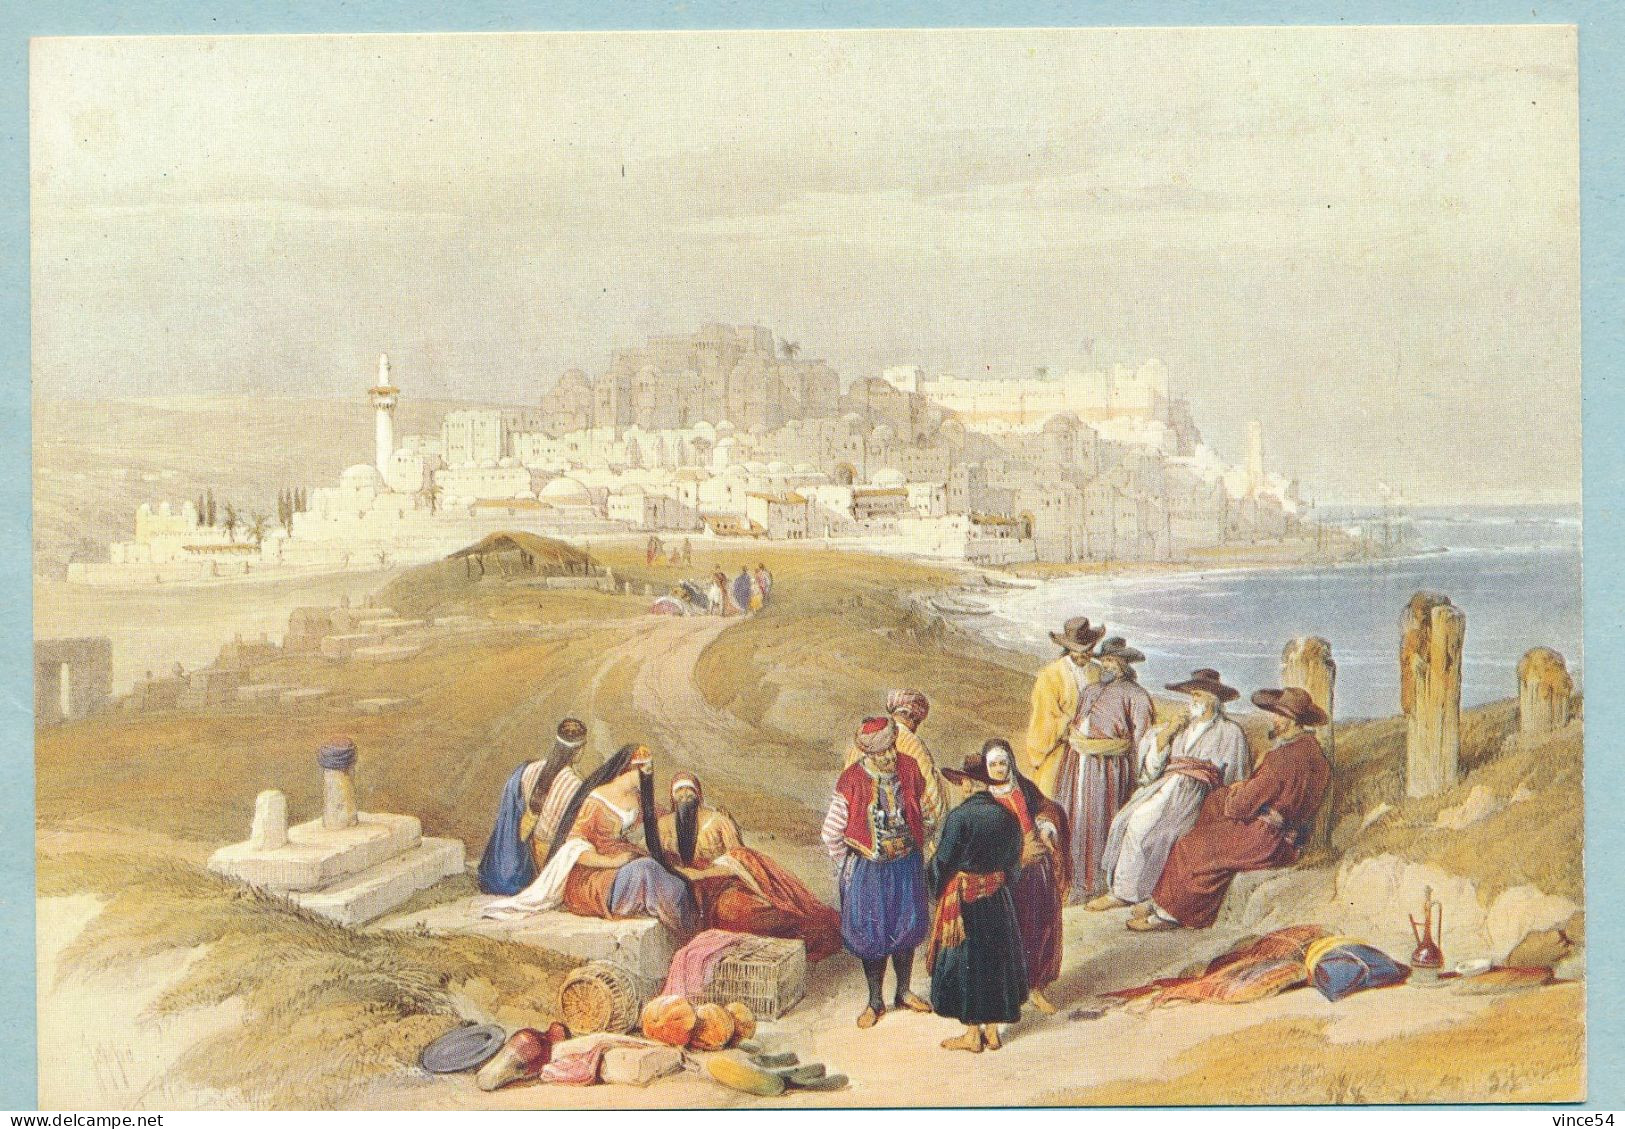 Ancient JAFFA (1839) - Lithograph By David Roberts - Israel